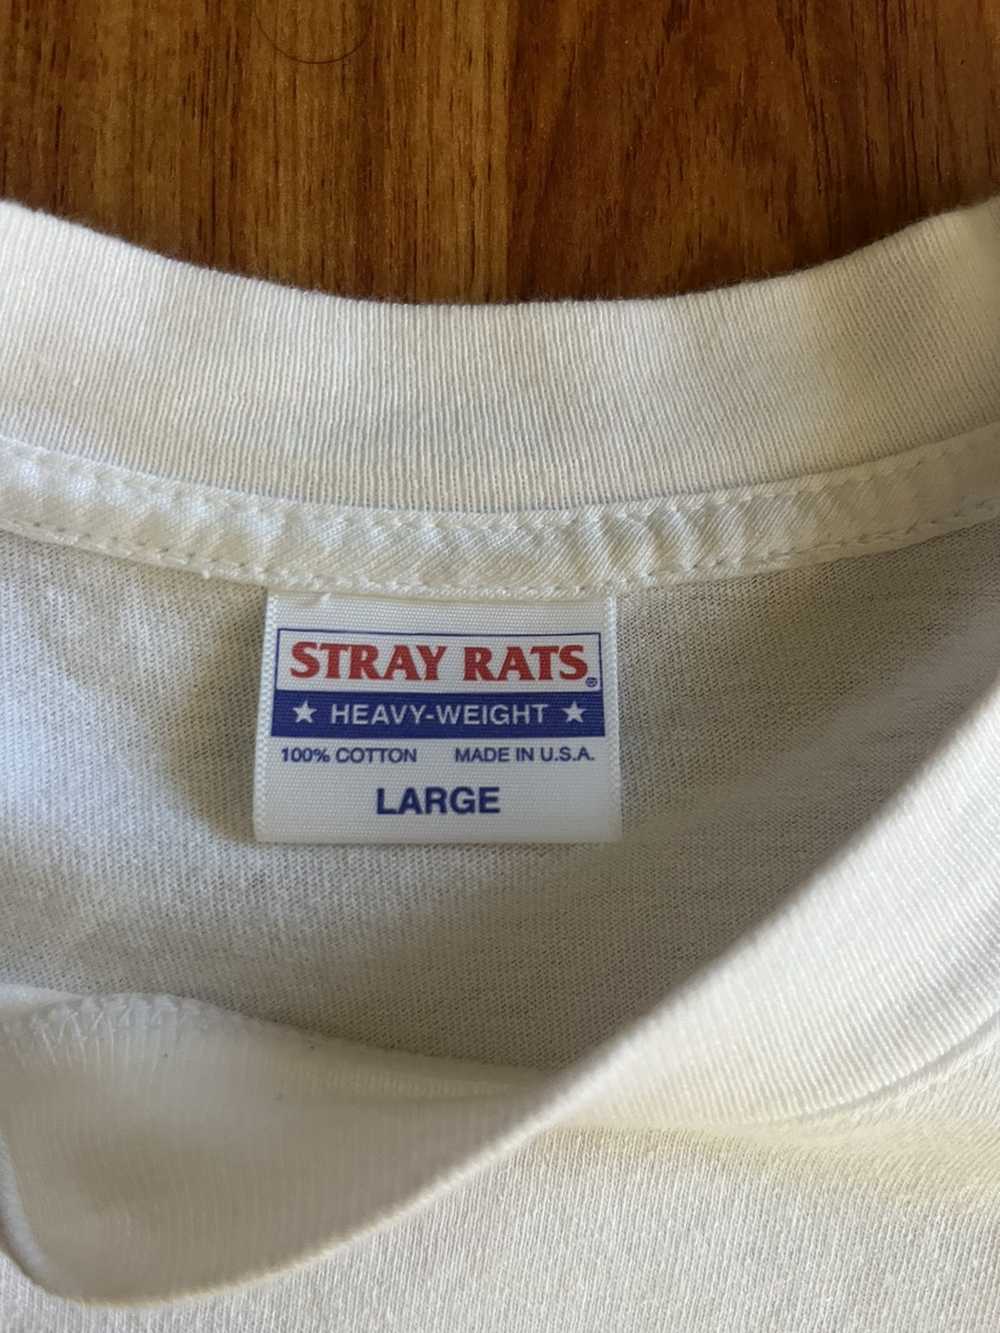 Stray Rats Stray rats “Hardcore” Tee - image 3